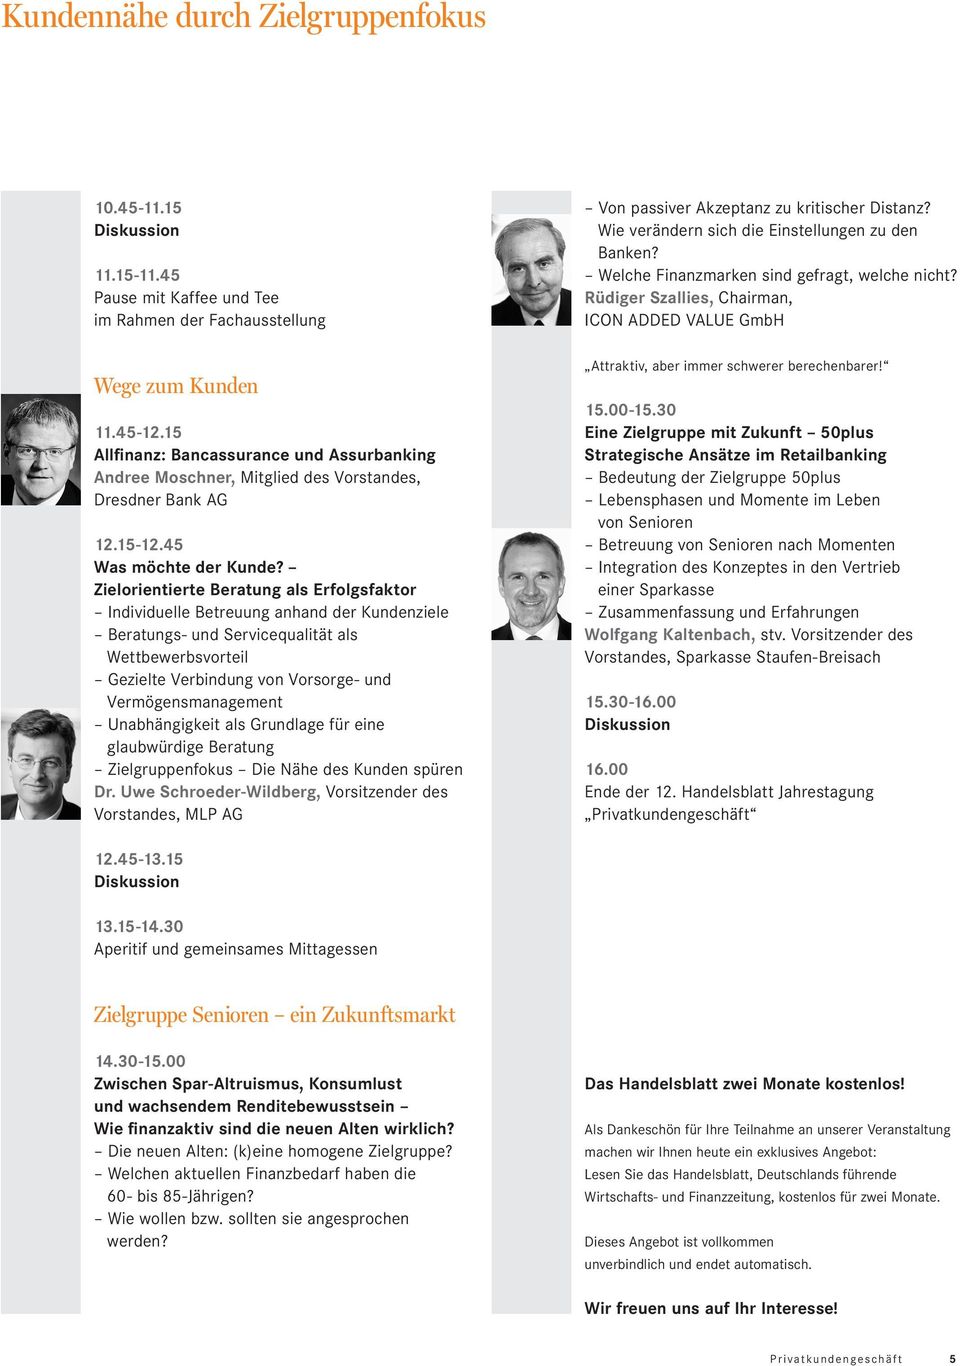 15 Allfinanz: Bancassurance und Assurbanking Andree Moschner, Mitglied des Vorstandes, Dresdner Bank AG 12.15-12.45 Was möchte der Kunde?